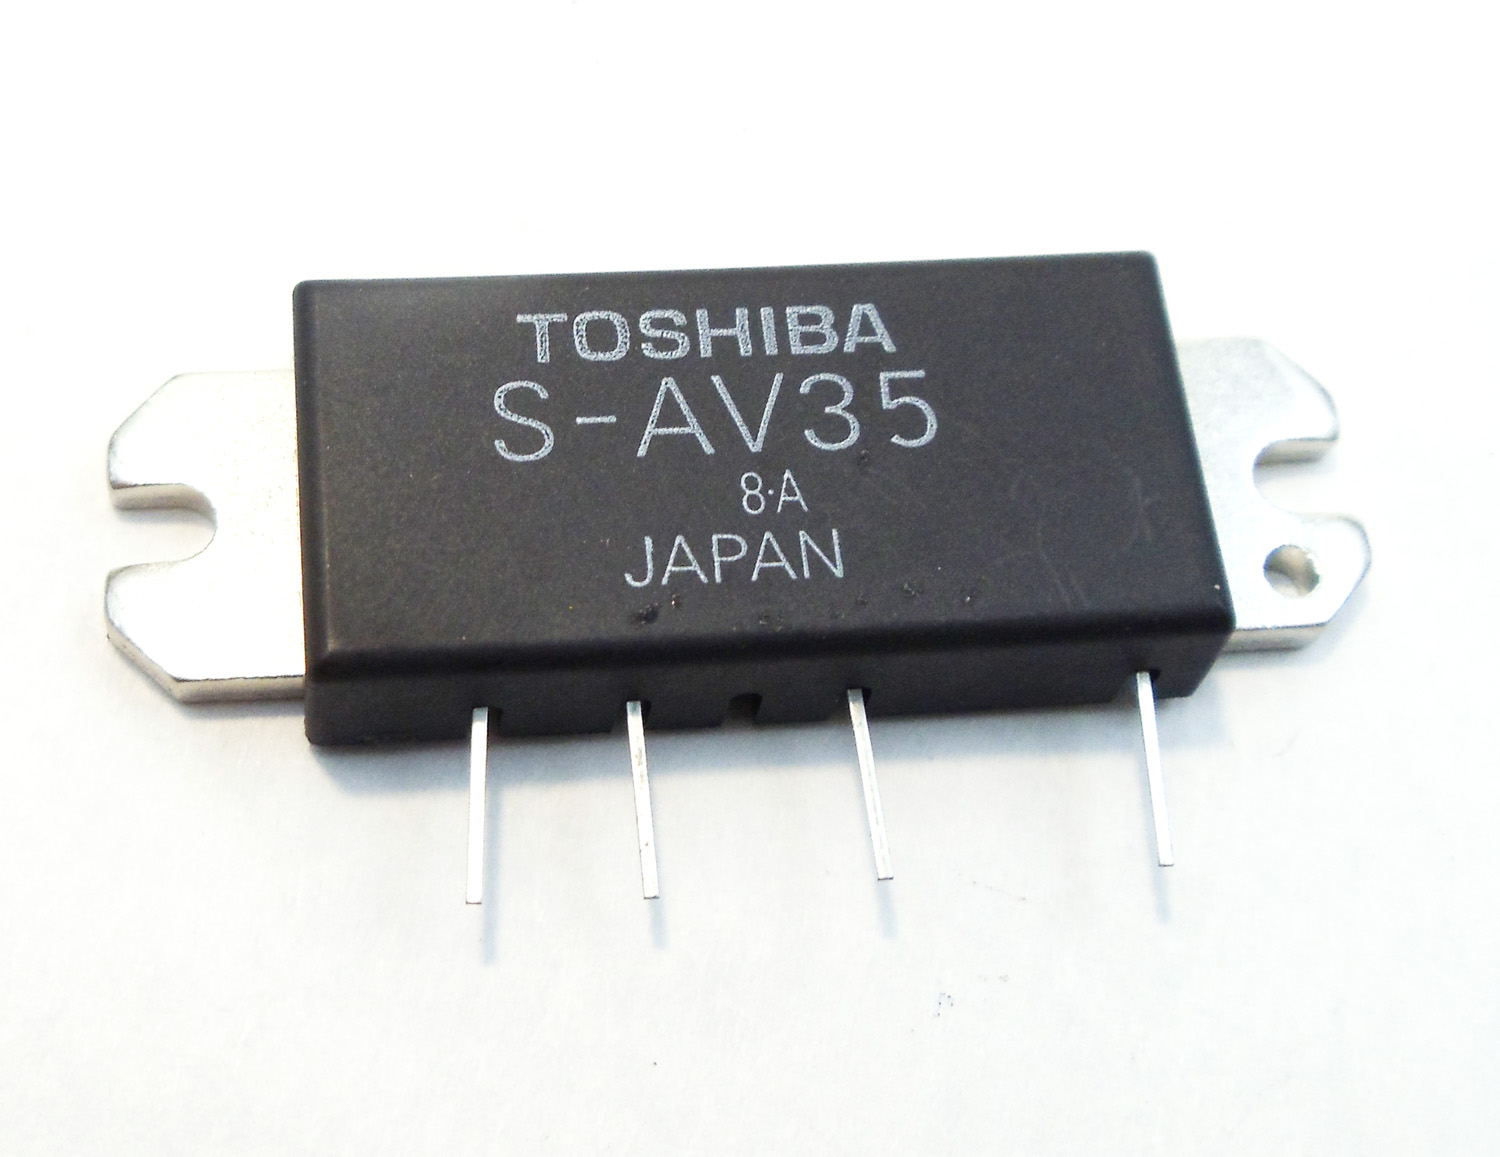 Transistor Module For Solaradsc (S-Av35)